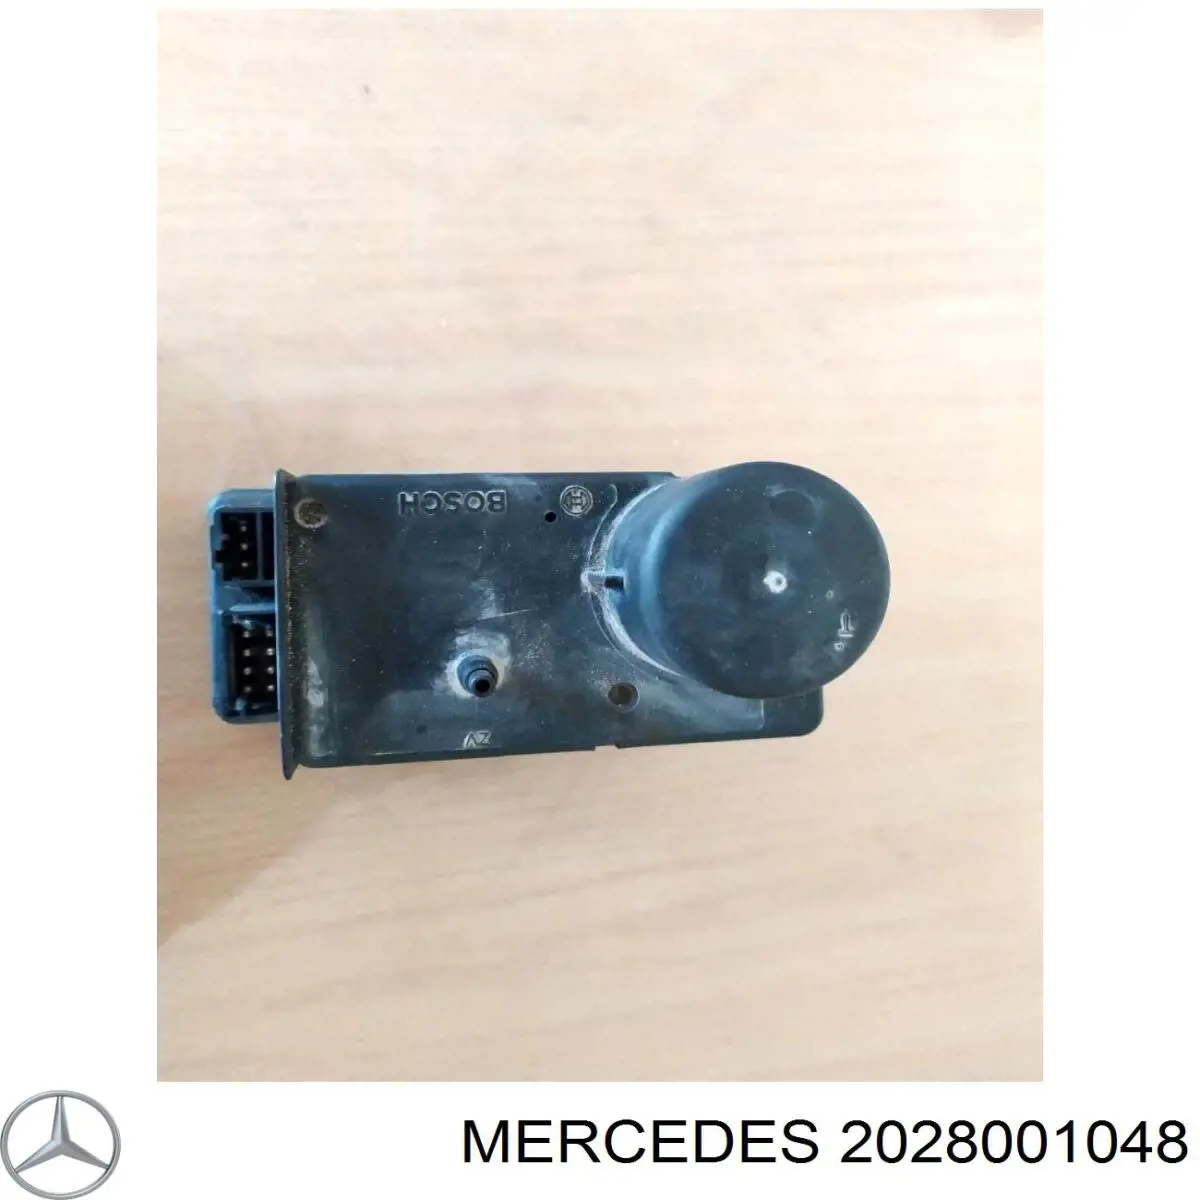 Bomba do sistema pneumático de carroçaria para Mercedes C (W202)